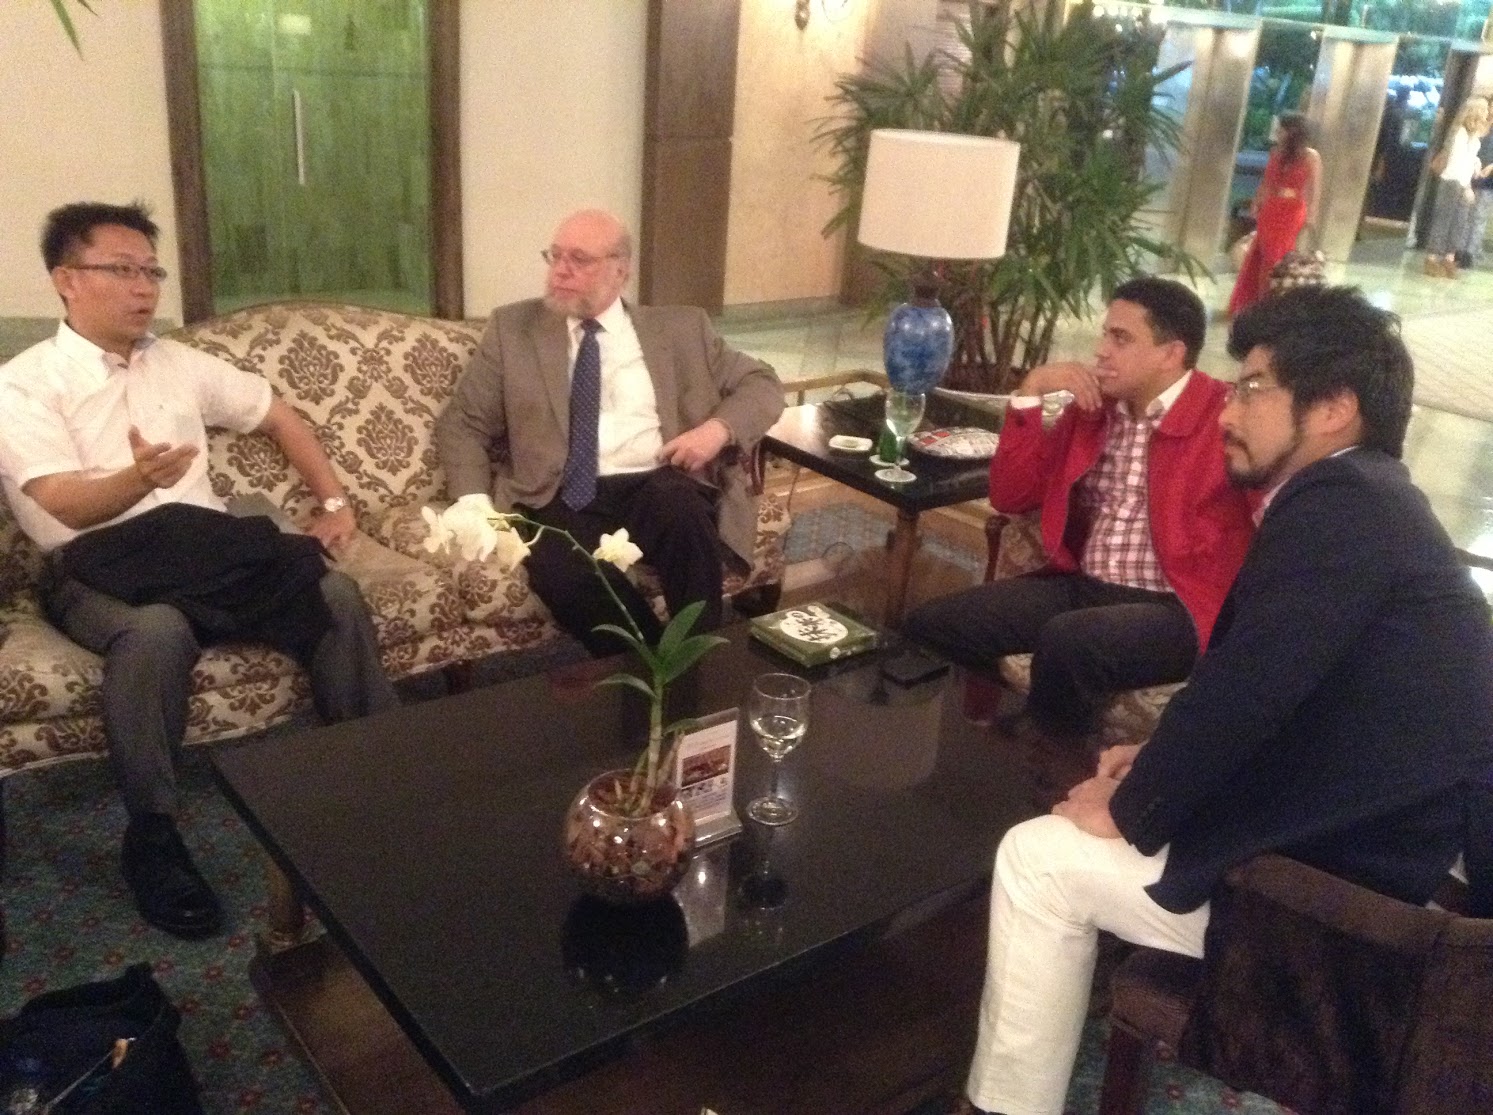 Con Senador Nakanishi, Embajador Verges y Consejero Balaguer en el lobby de Hotel Embajador, Santo Domingo.